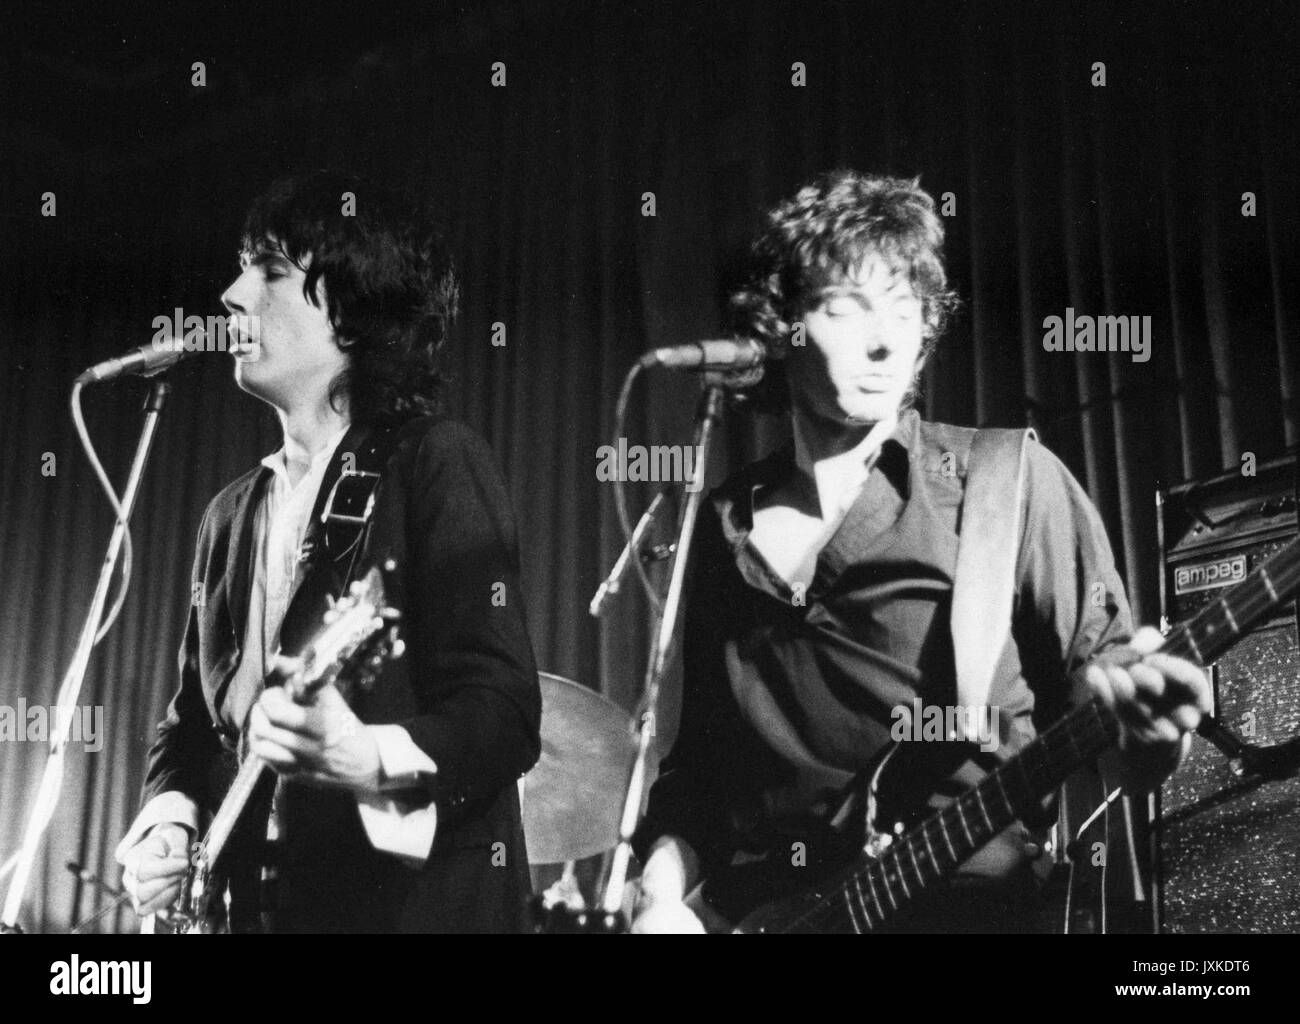 Esta noche, los británicos new wave rock band, para actuar en directo sobre un escenario en Londres, Inglaterra, el 6 de junio de 1978. La banda tuvo varios éxitos de sencillos a finales de los setenta. Foto de stock